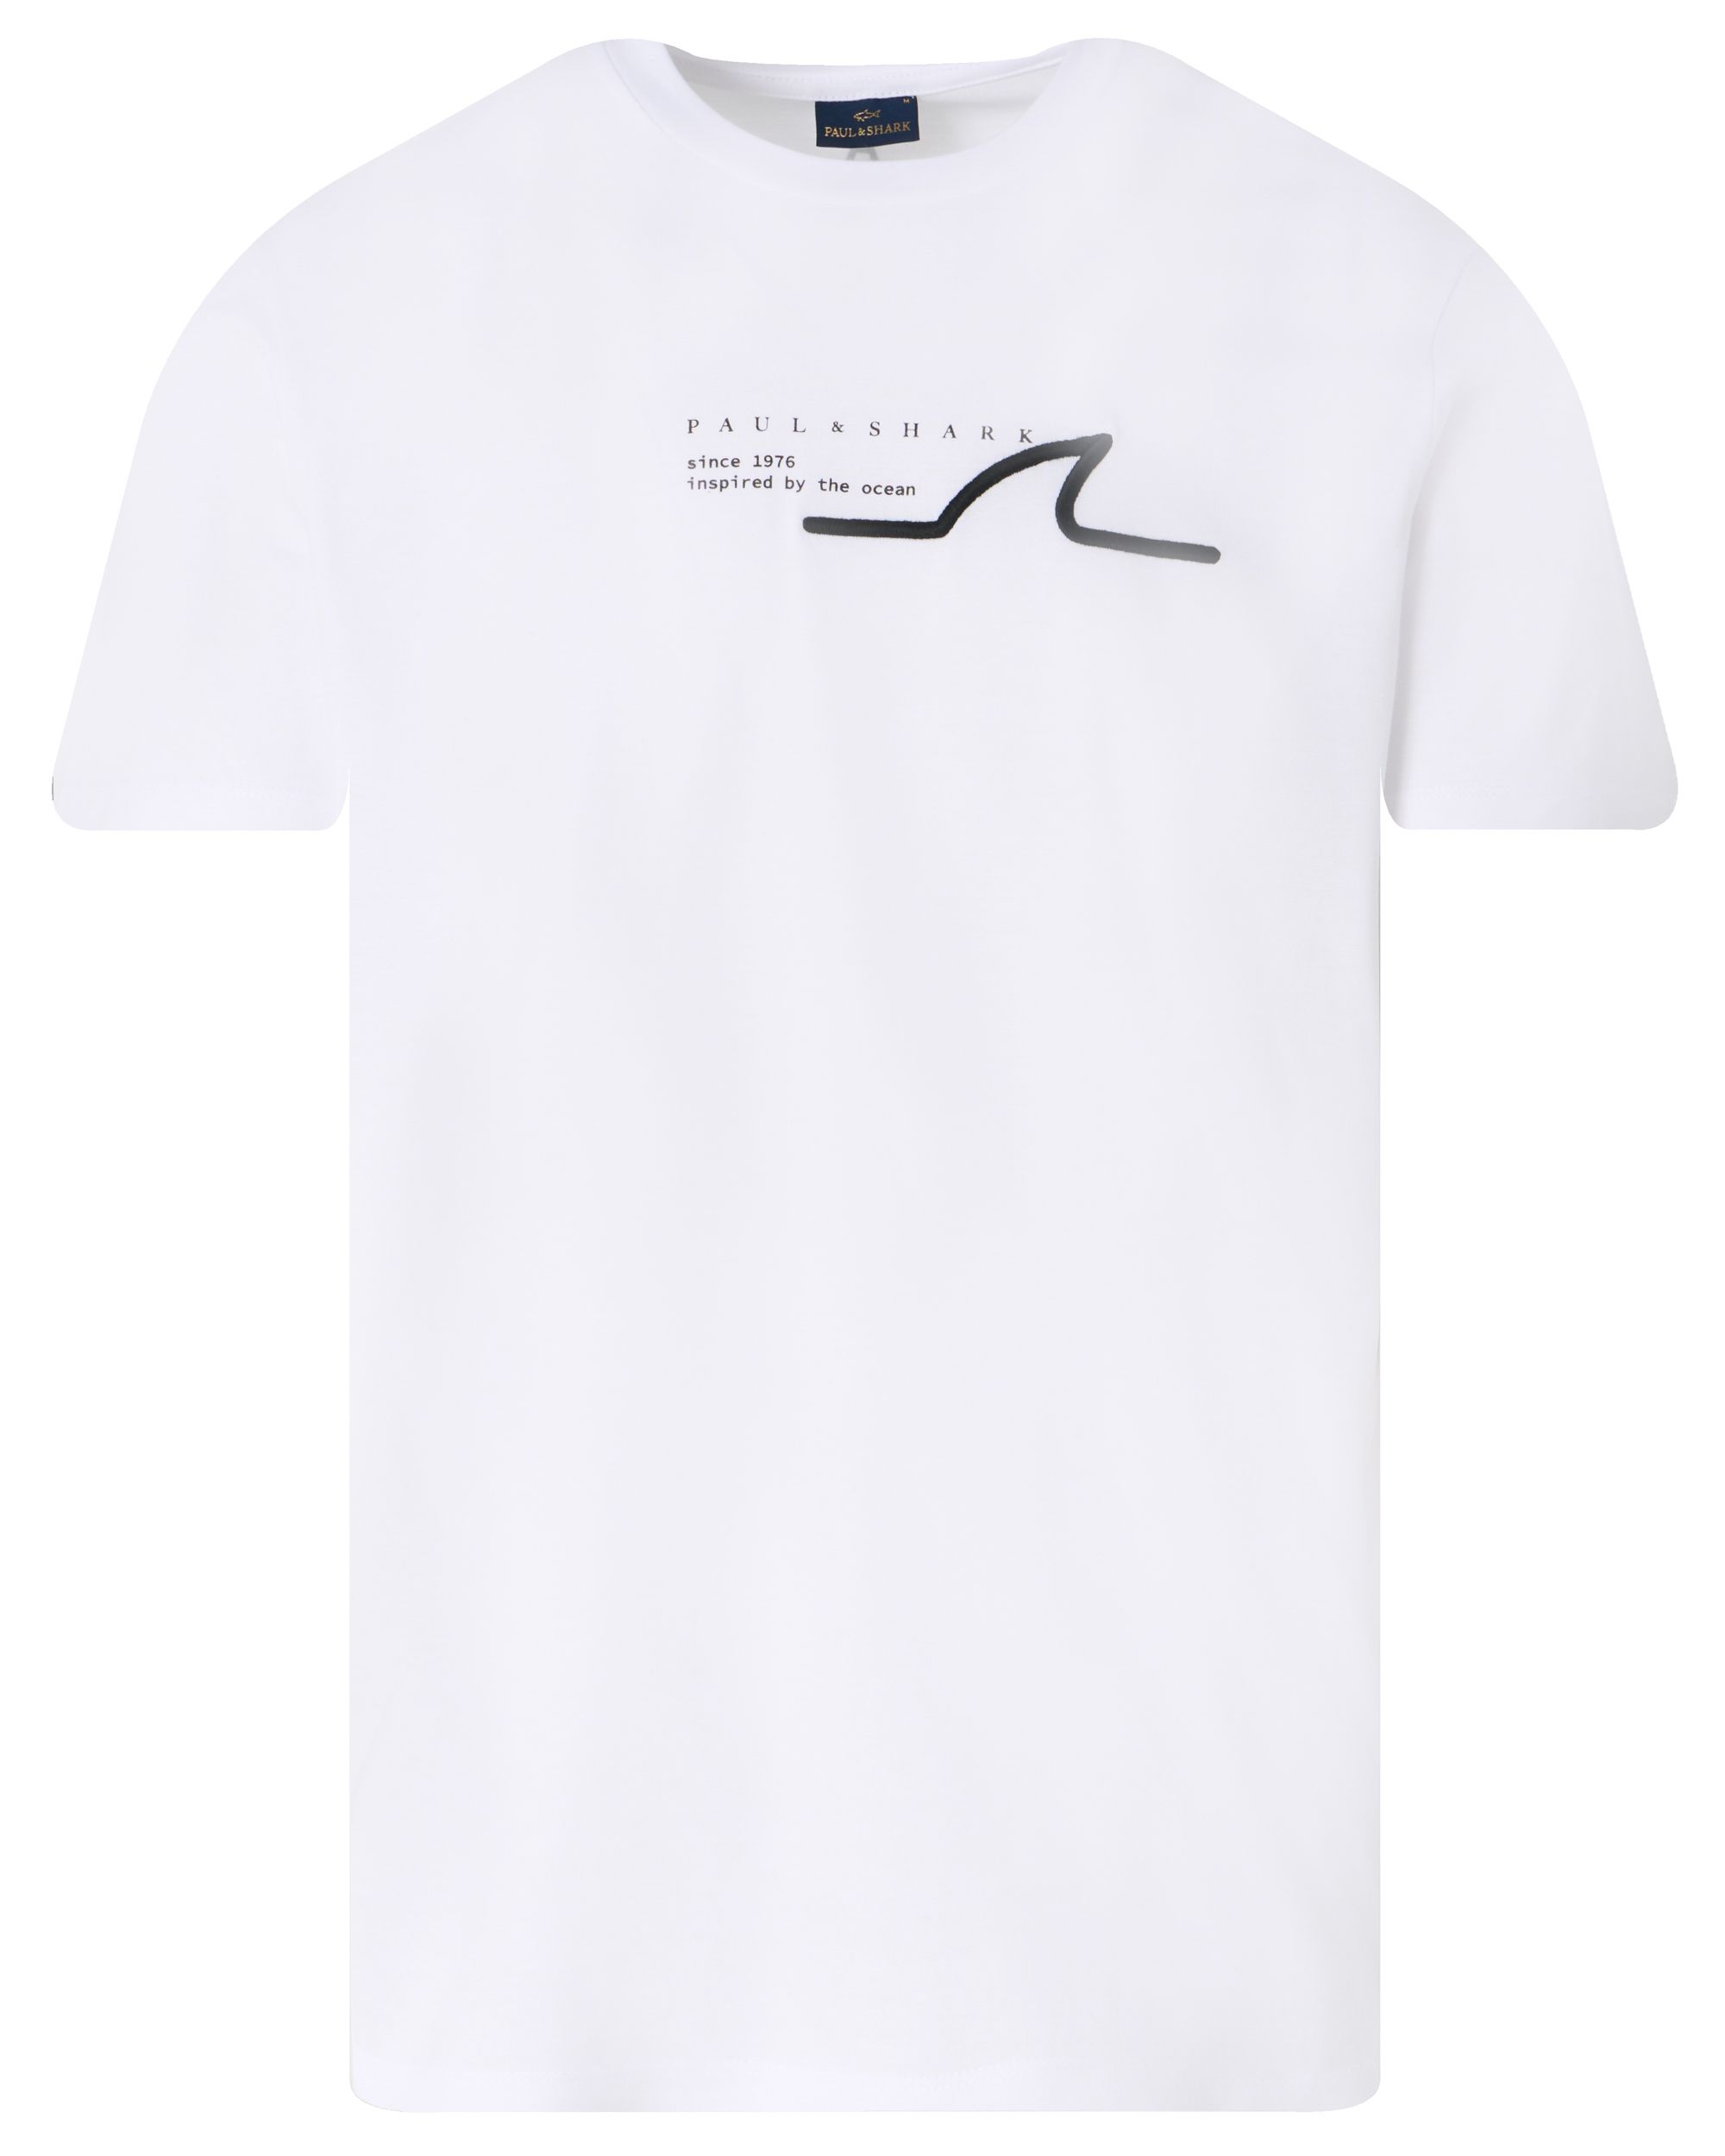 Paul & Shark T-shirt KM Ecru 092033-001-XL